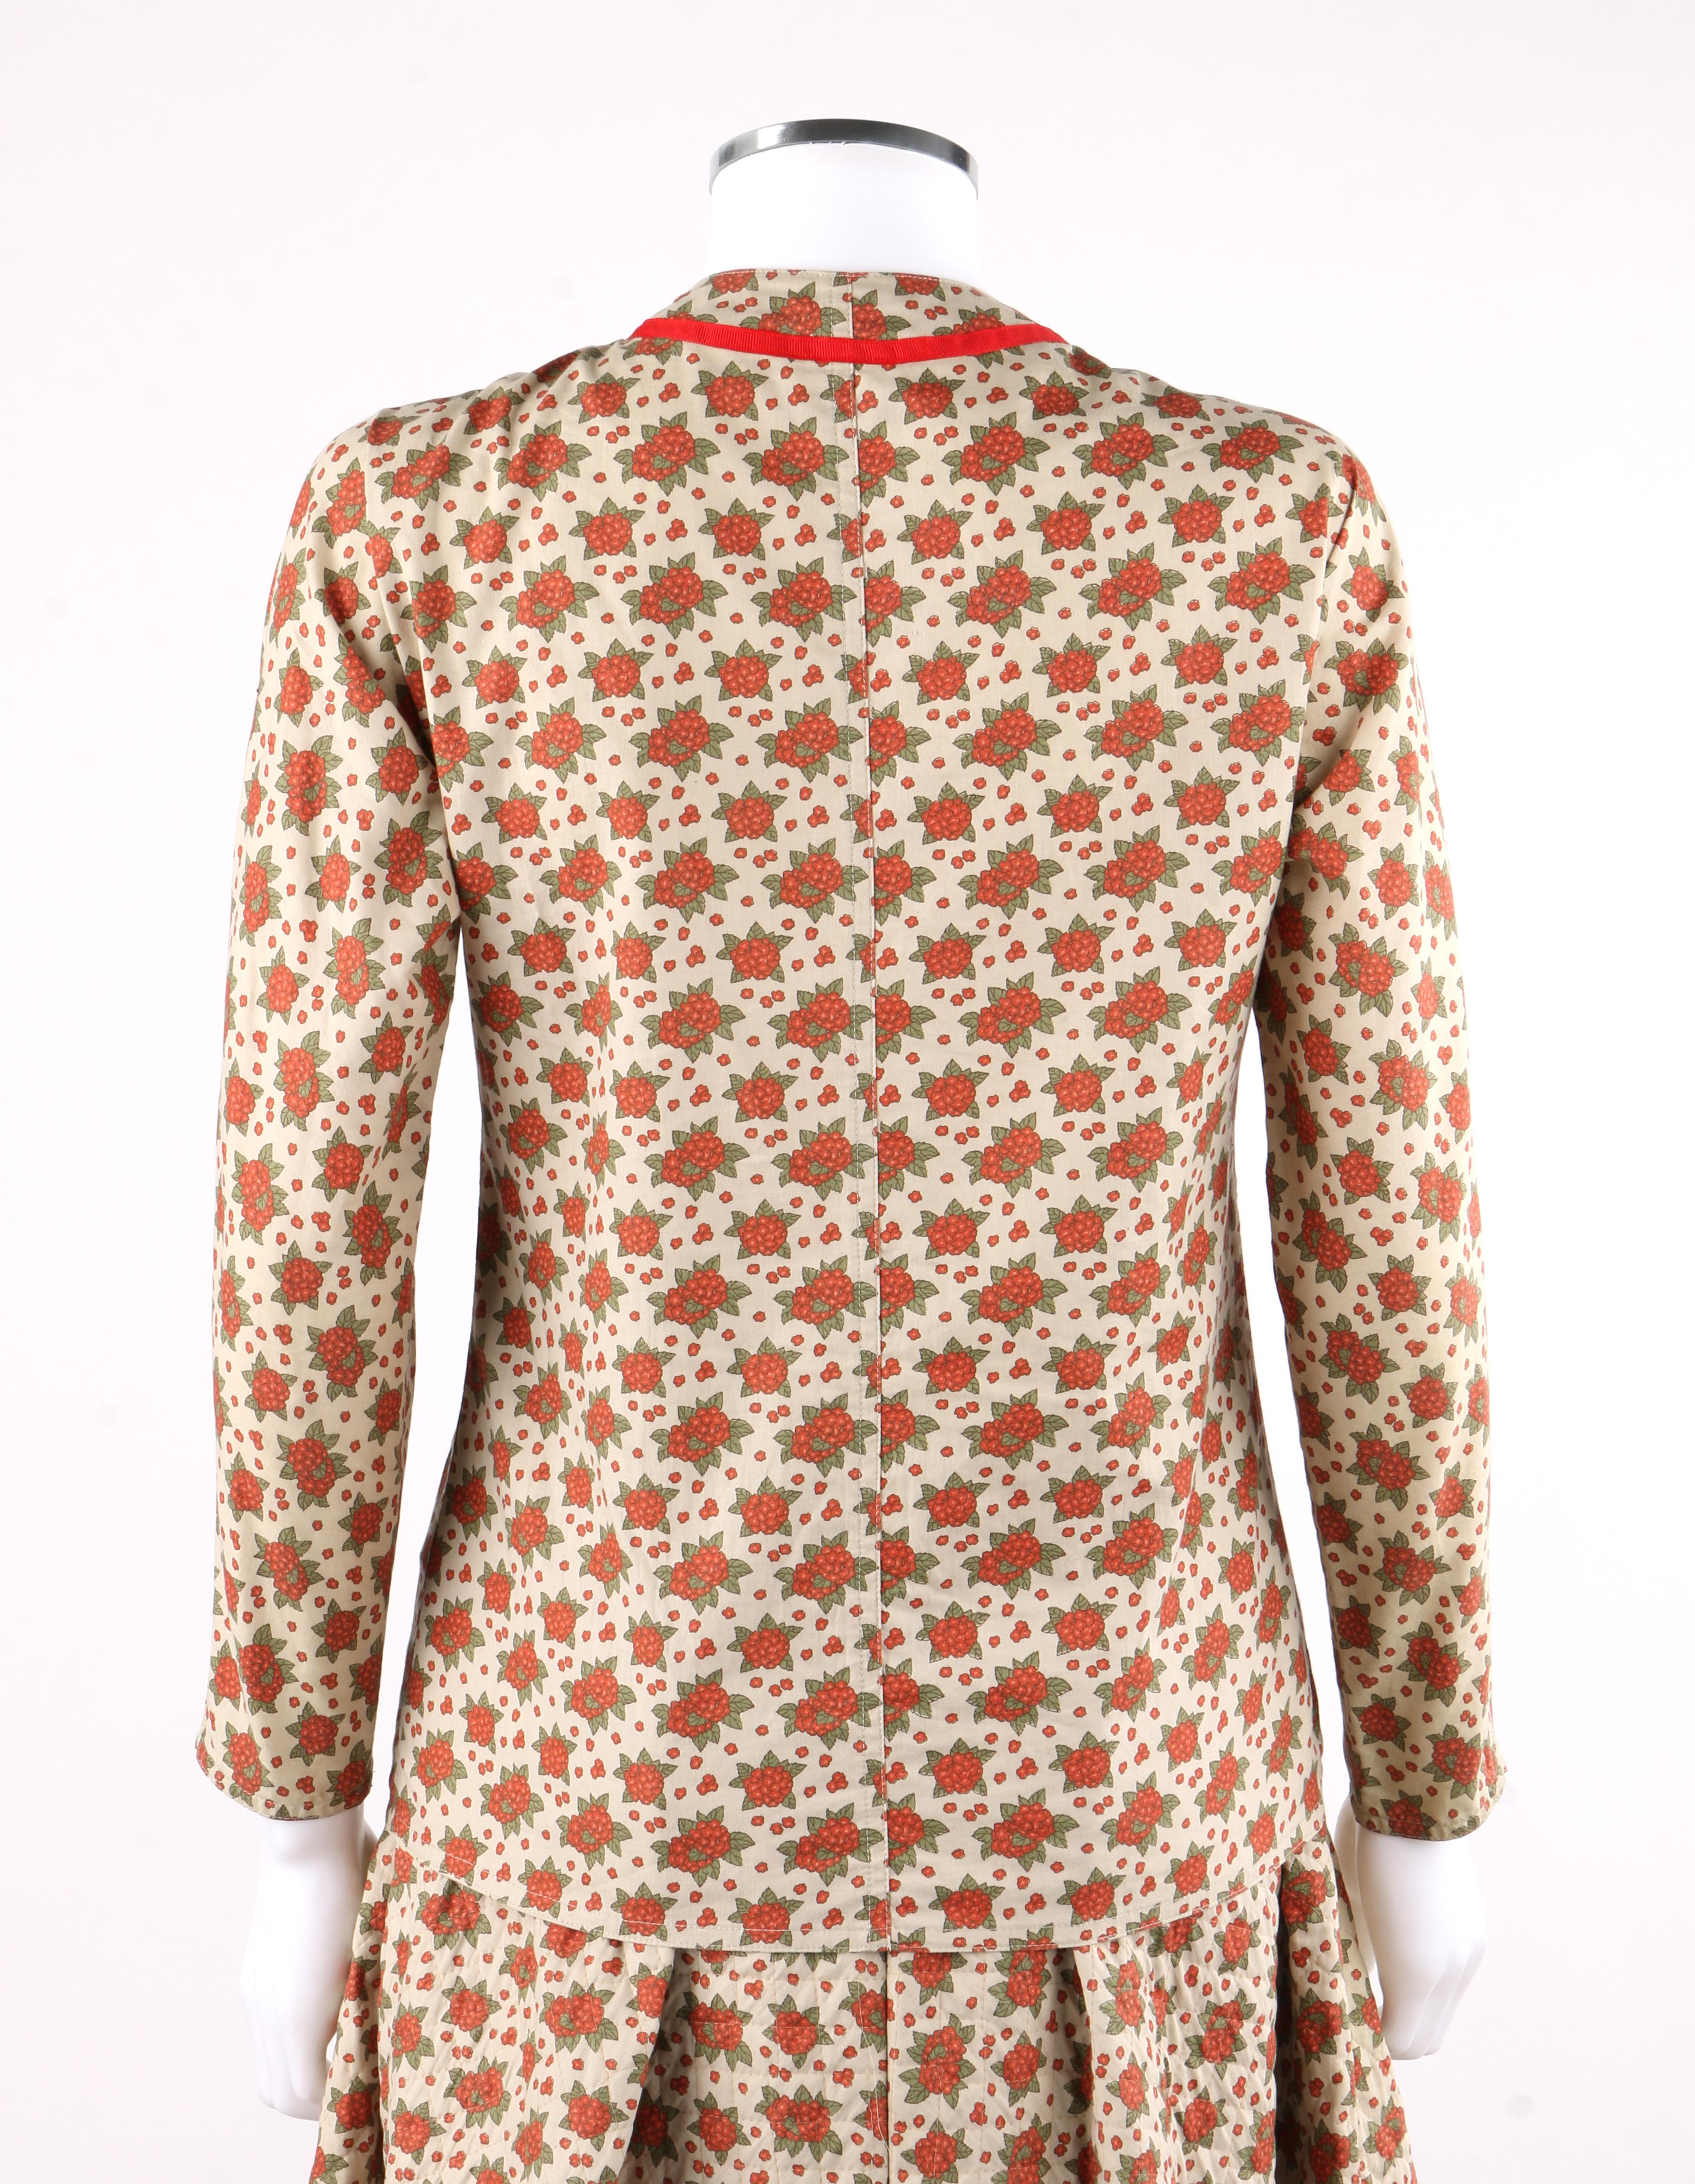 GEOFFREY BEENE c.1970's 2pc Beige Floral Bouquet Button Up A-Line Skirt Suit Set 1